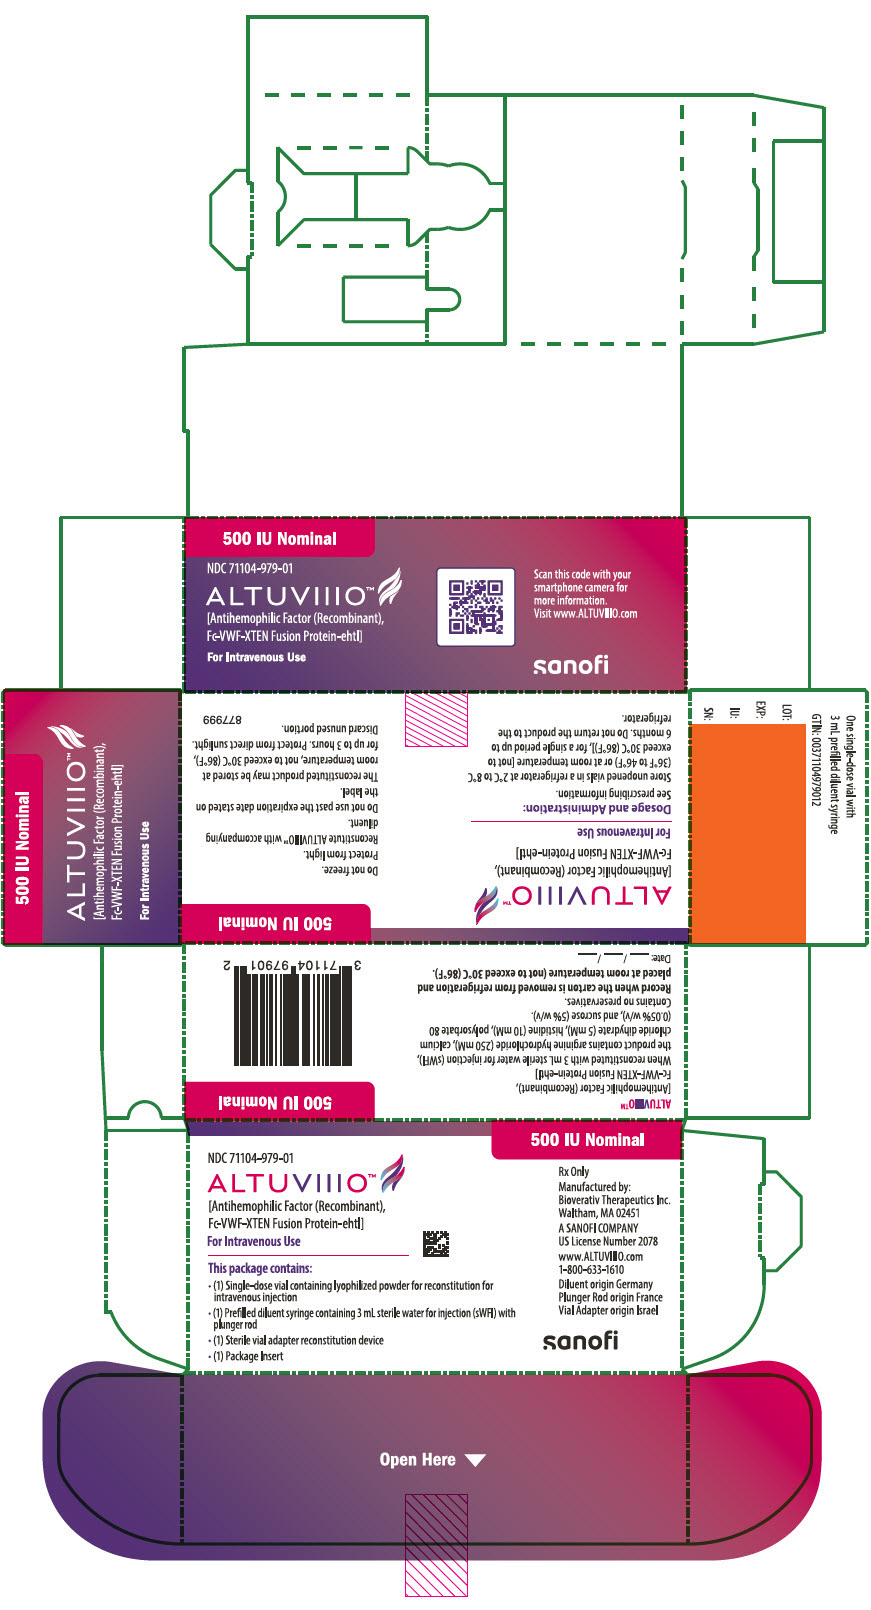 PRINCIPAL DISPLAY PANEL - 500 IU Kit Carton